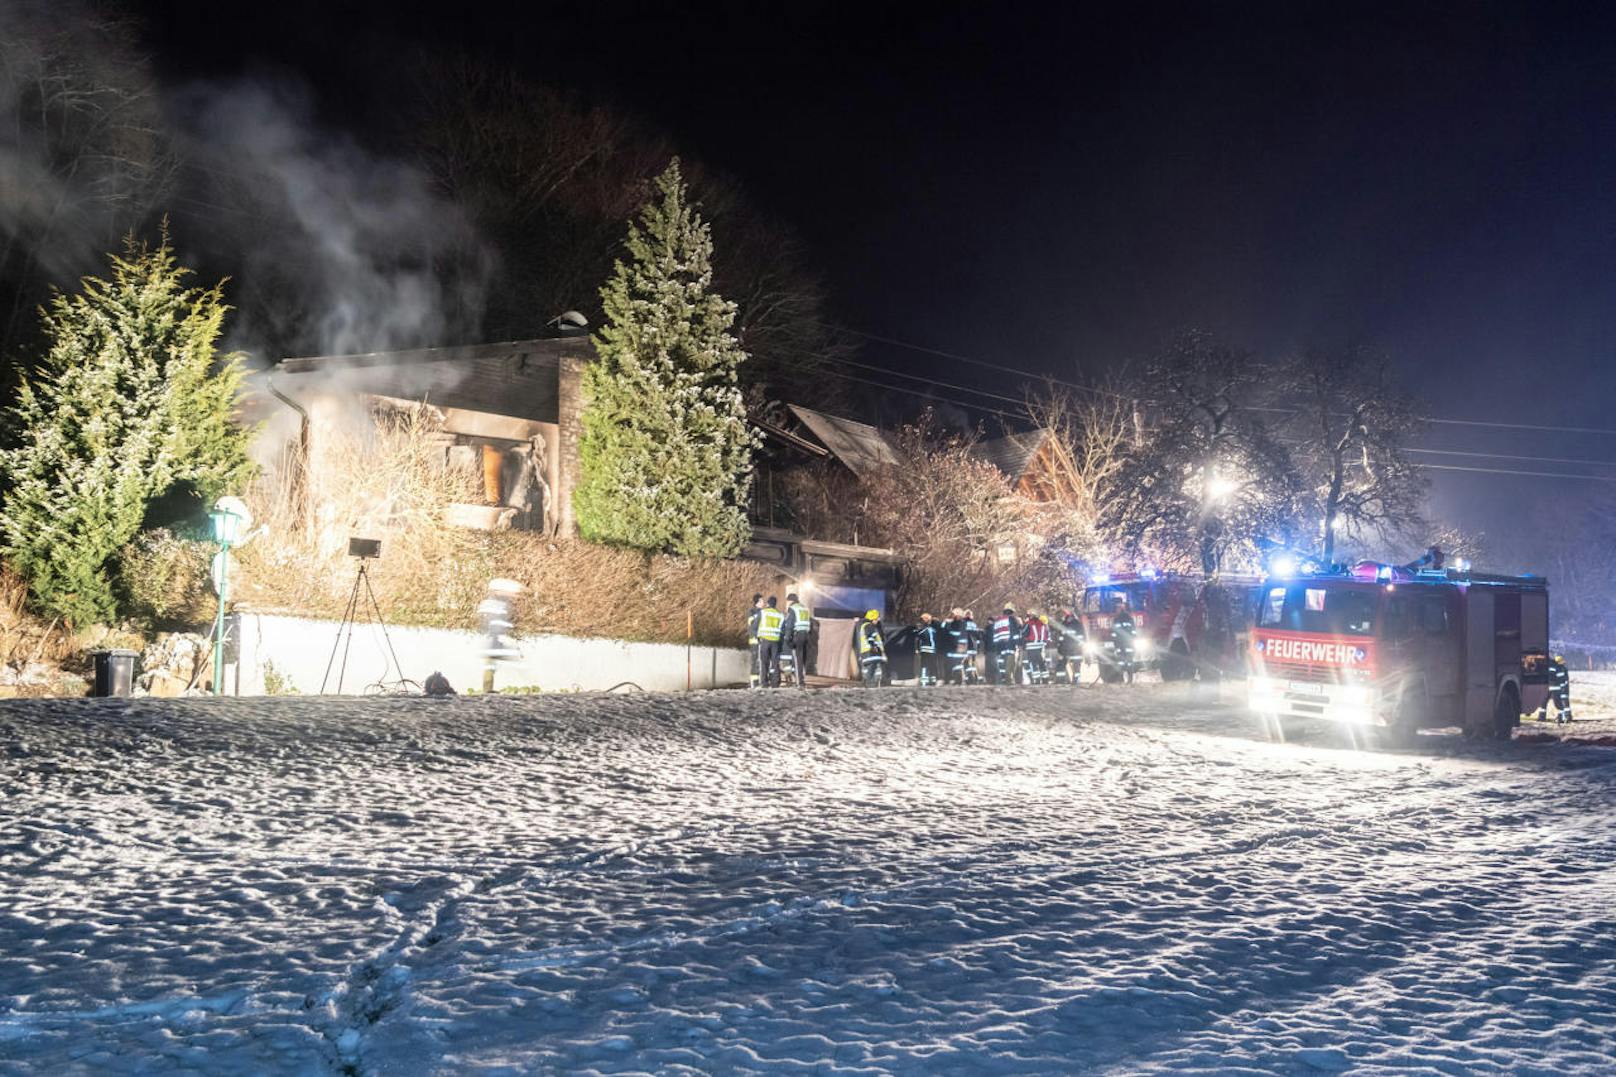 In einem Einfamilienhaus in Bad Kreuzen (Bezirk Perg) ist am 16. Dezember 2018 kurz nach Mitternacht aus bisher unbekannter Ursache Feuer ausgebrochen. Die Einsatzkräfte von 8 Feuerwehren rückten an.